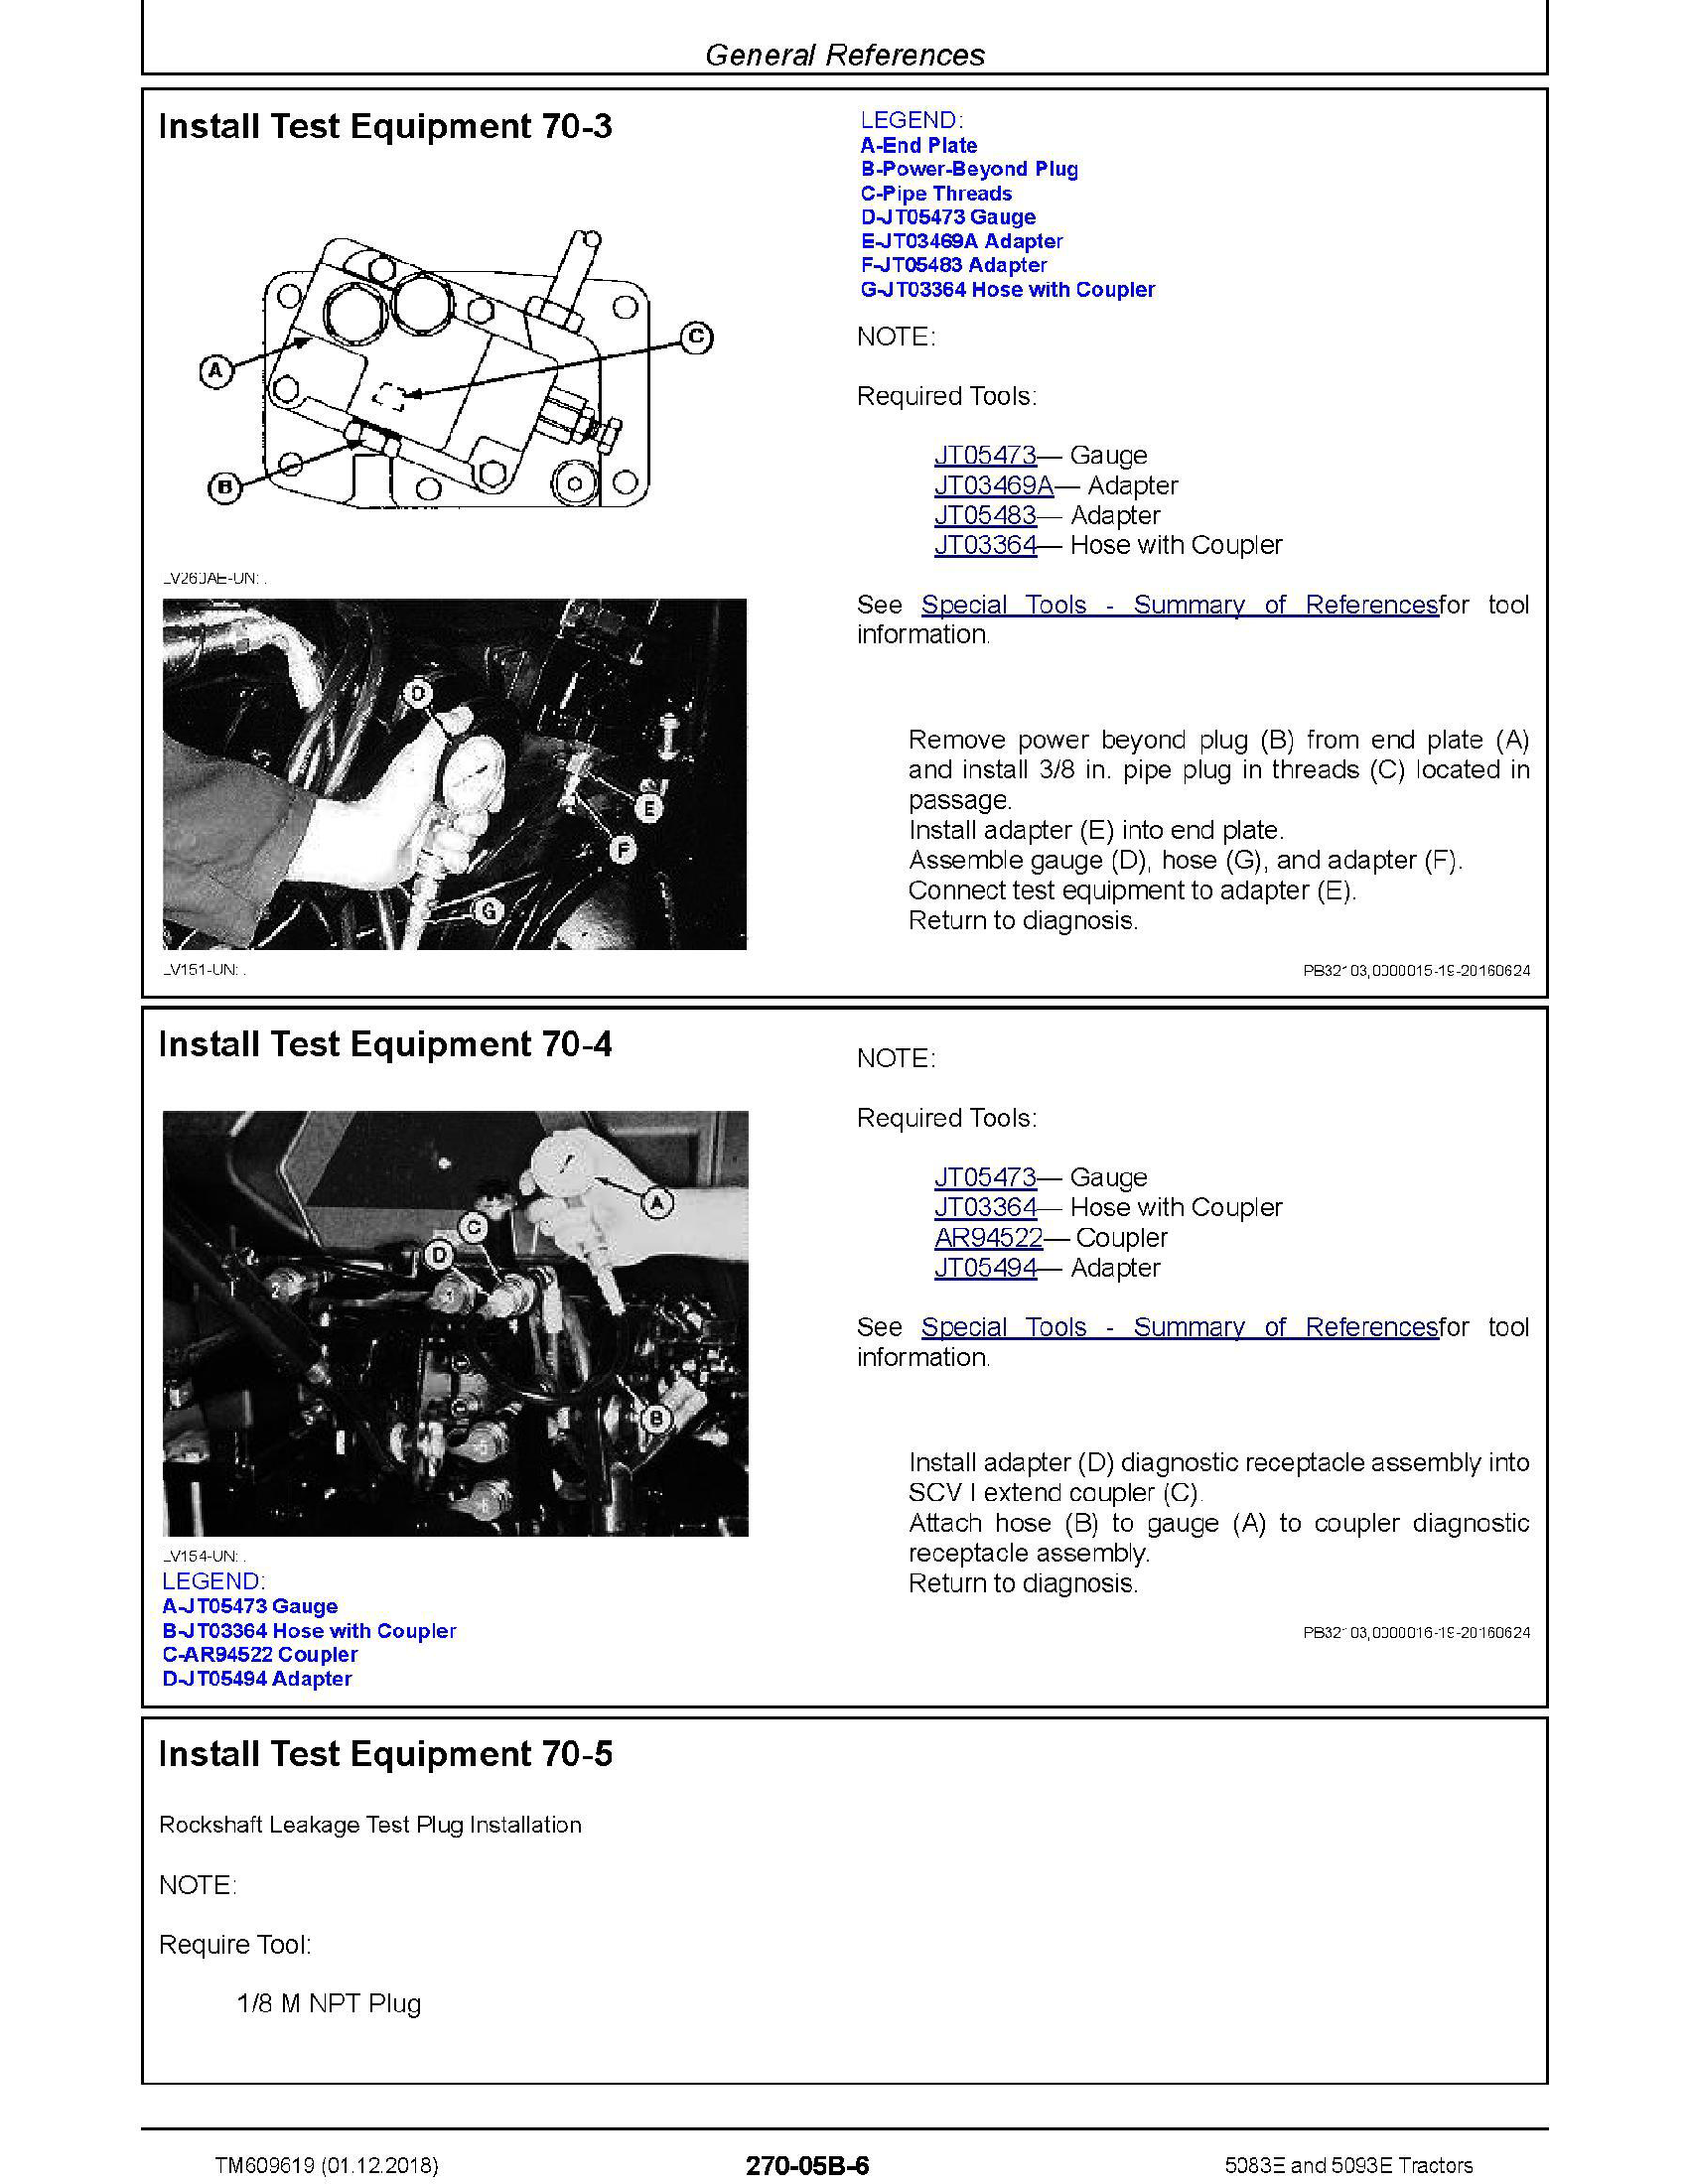 John Deere 994 manual pdf